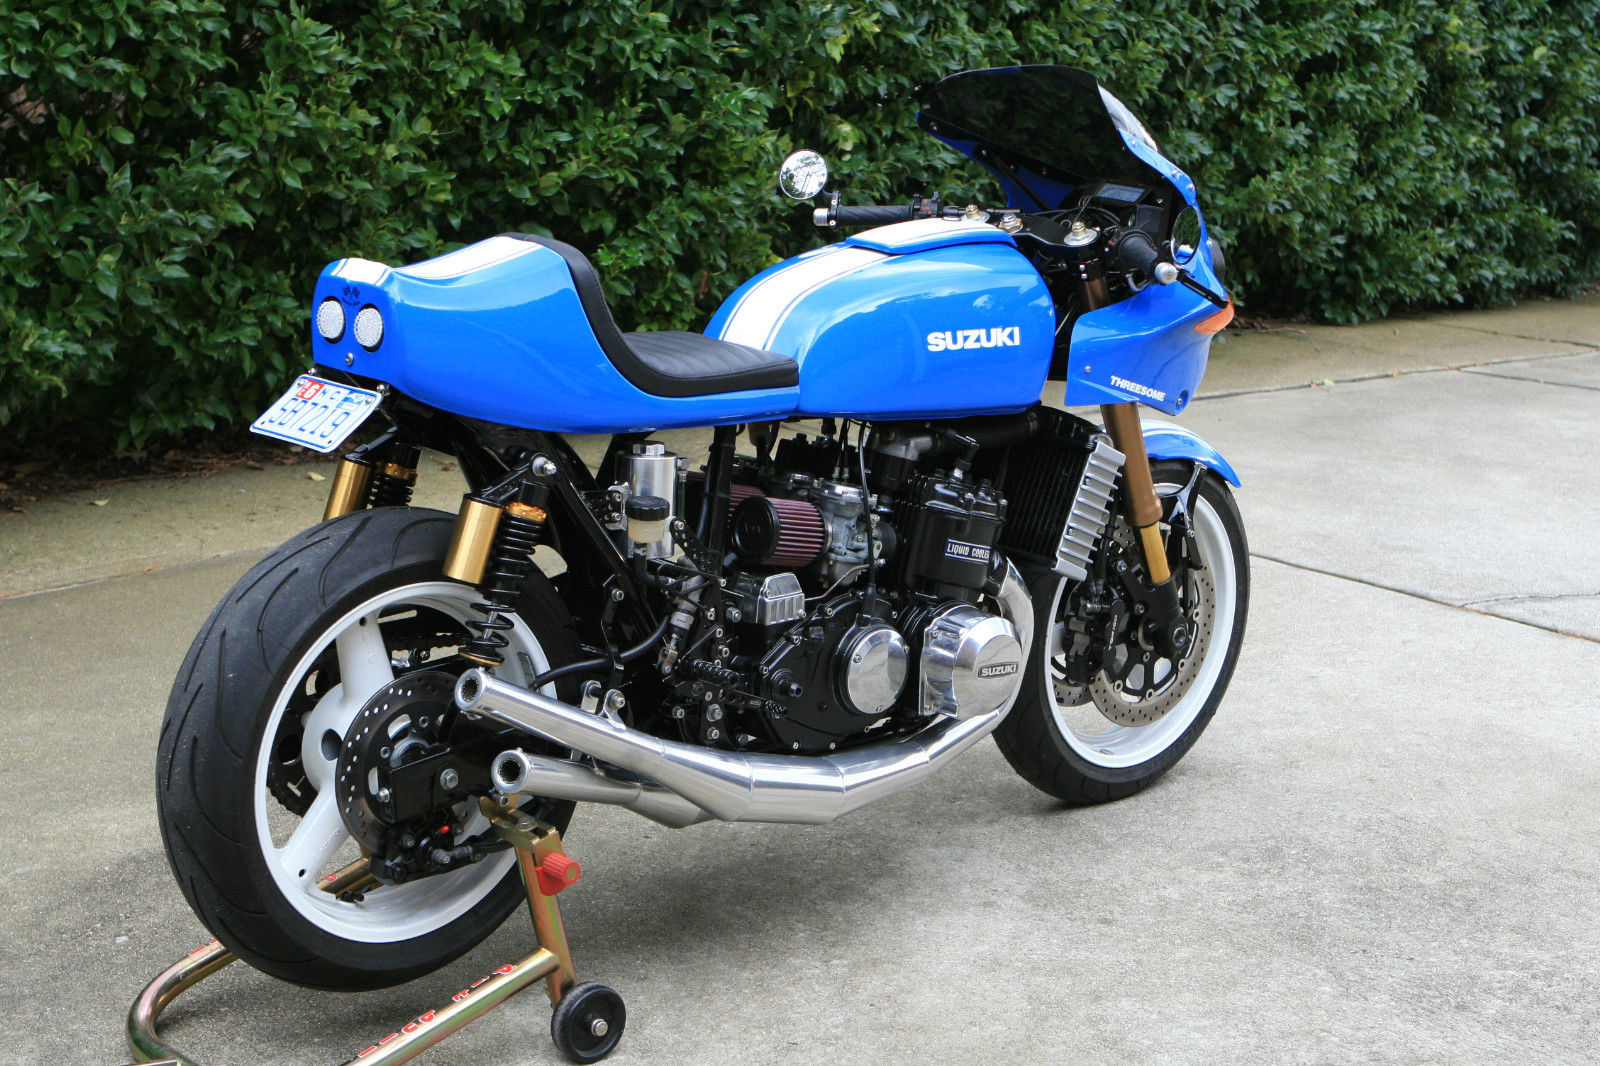 Suzuki GT750: Suzuki's big wet triple - Old Bike Australasia